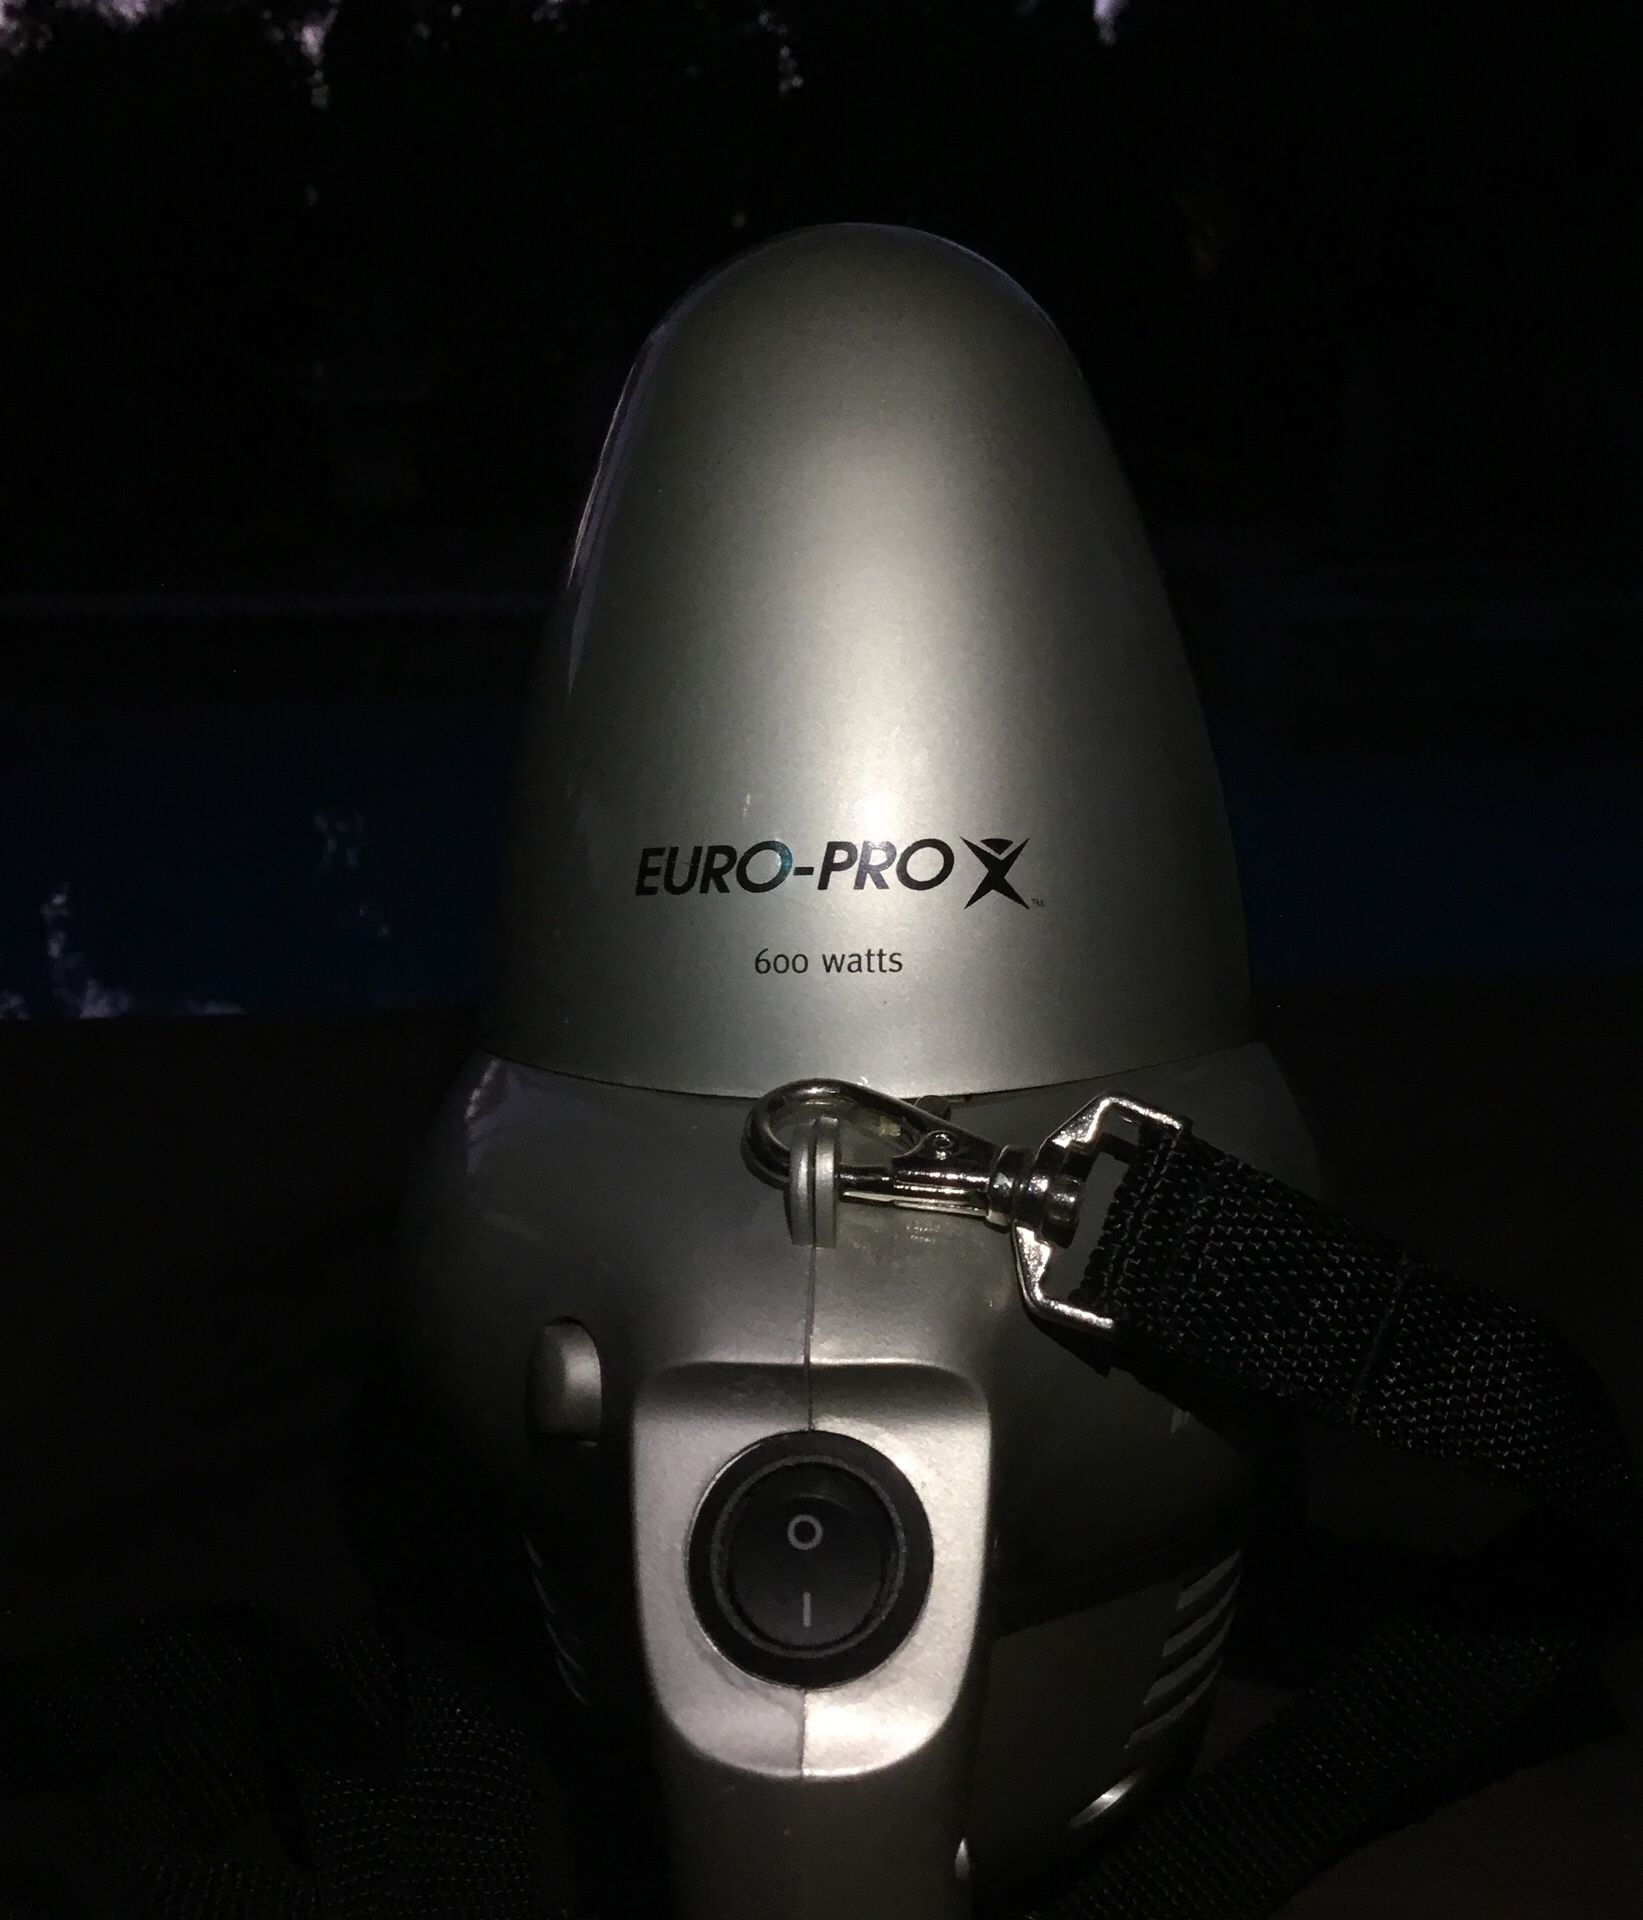 Euro-Pro EP033 Shark Handheld Vacuum with HEPA Filter